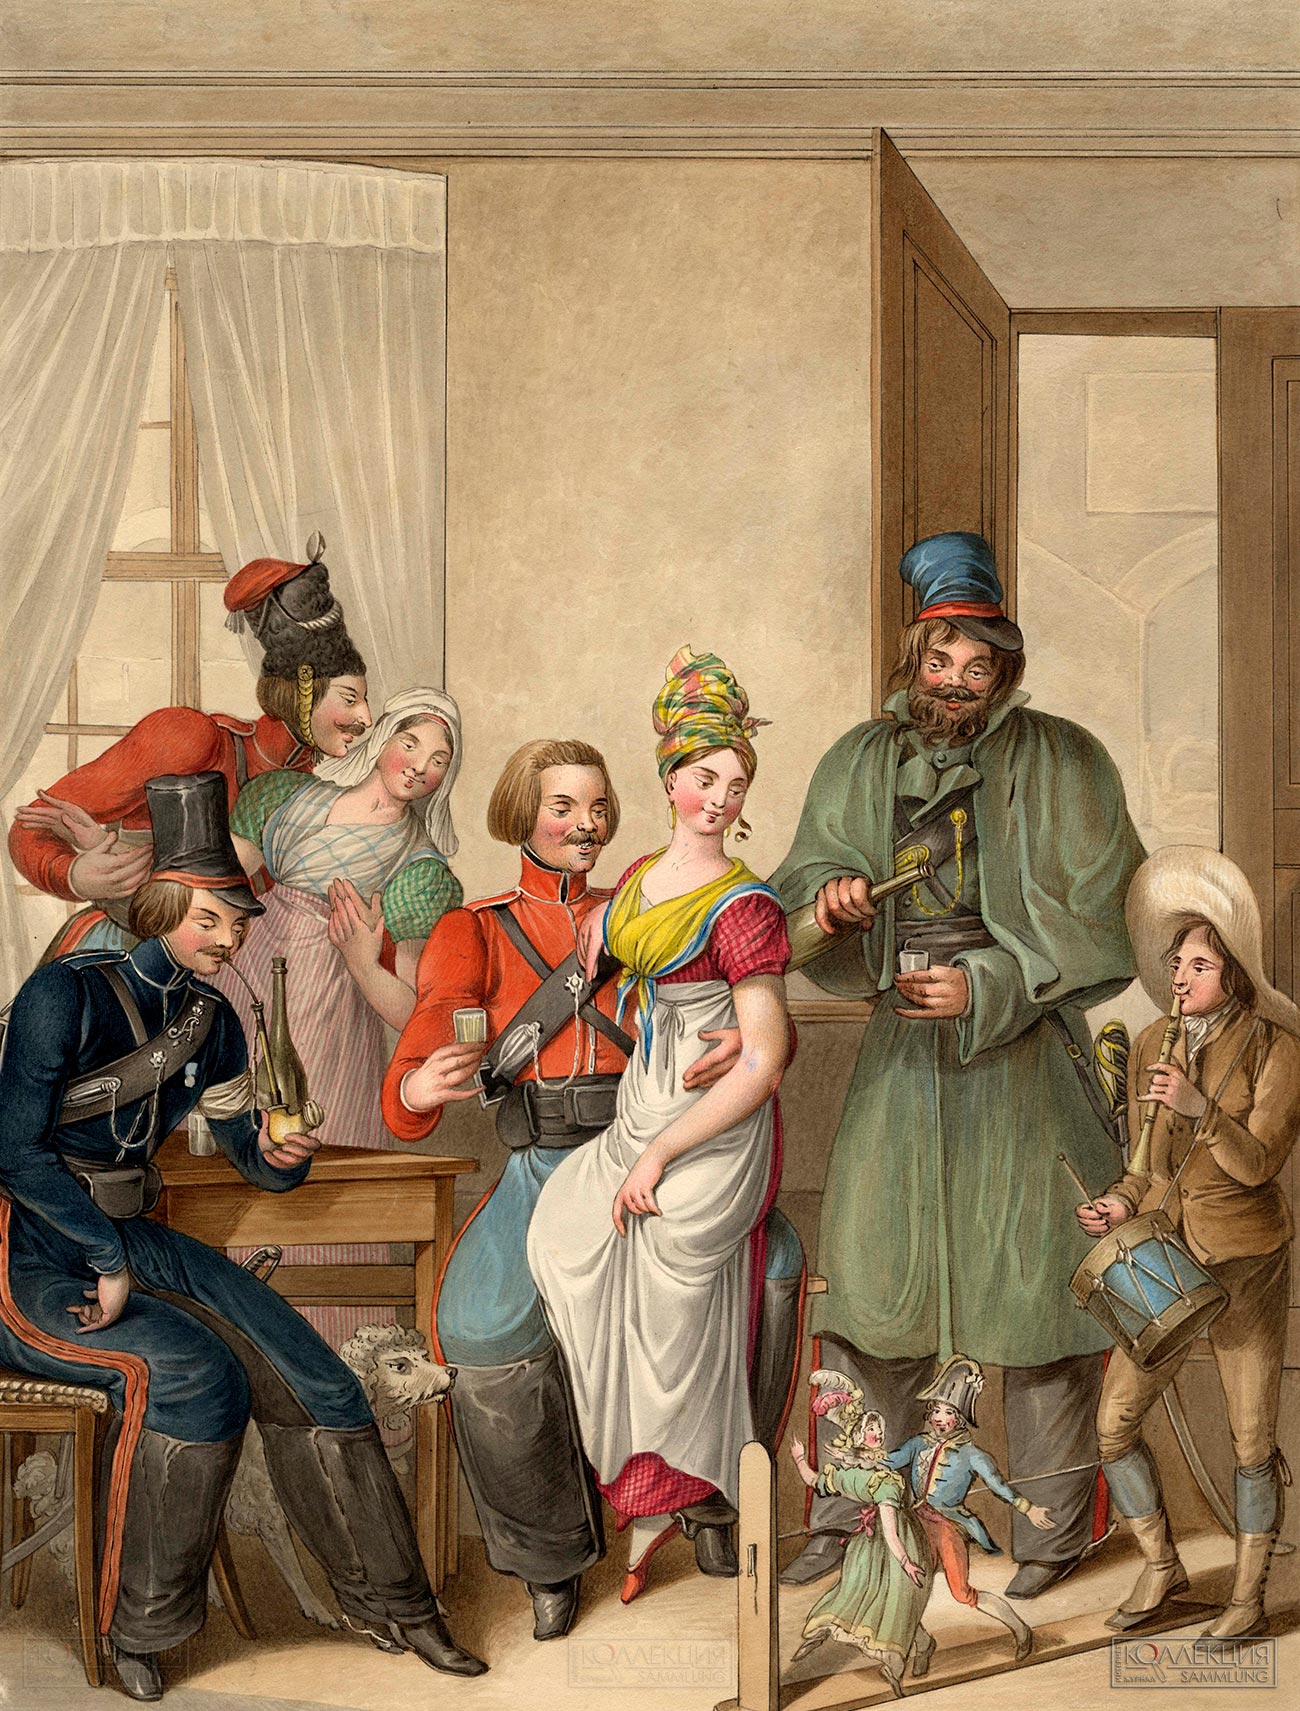 Опиц Г.-Э. Кукольное представление в кафе. Париж, 1814. 1815. ГИМ